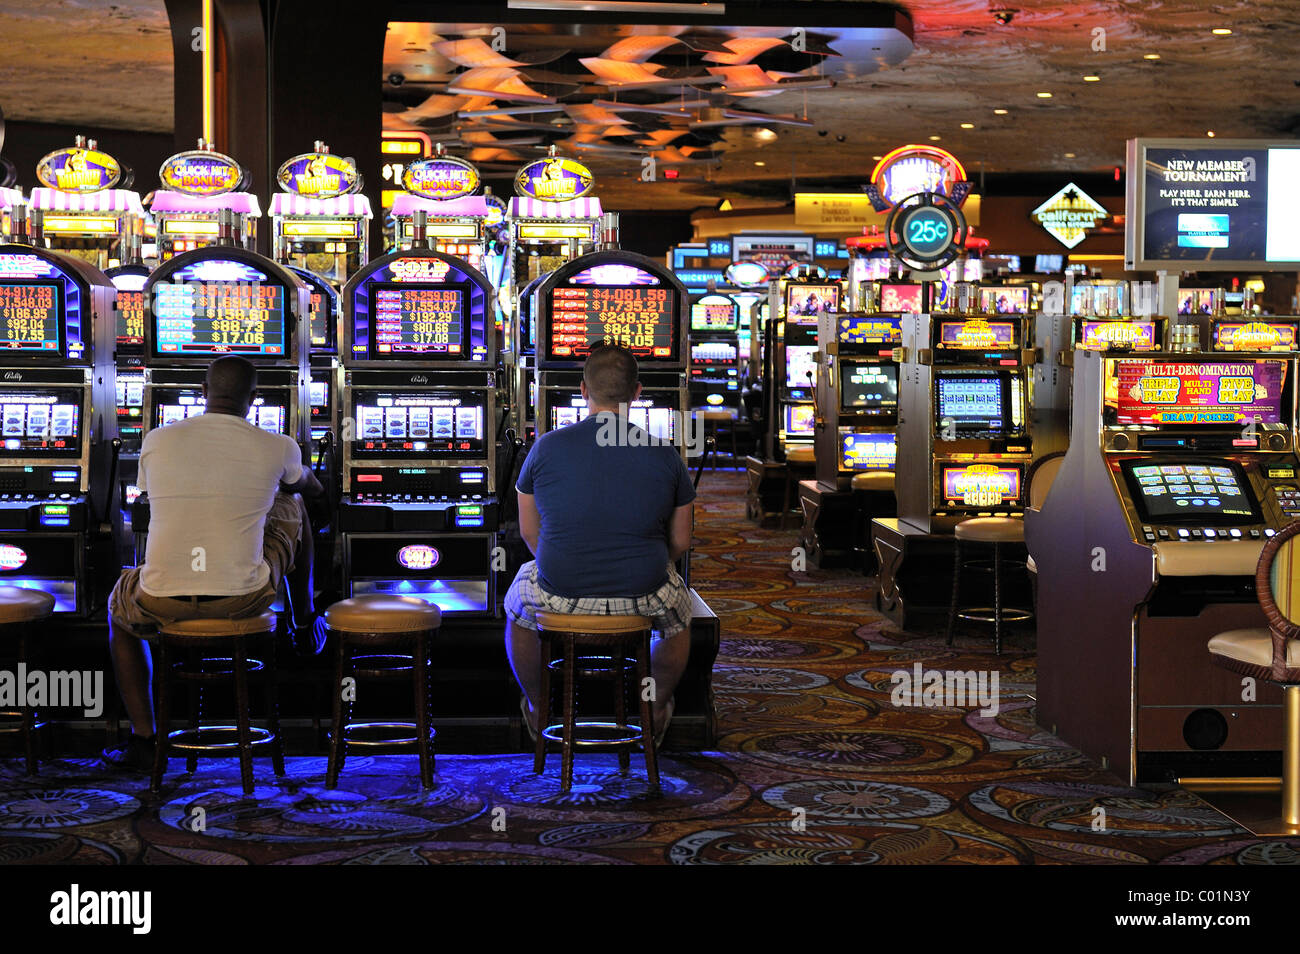 Les machines à sous dans le 5-star Hôtel Mirage, Las Vegas, Nevada, USA, Amérique du Nord Banque D'Images